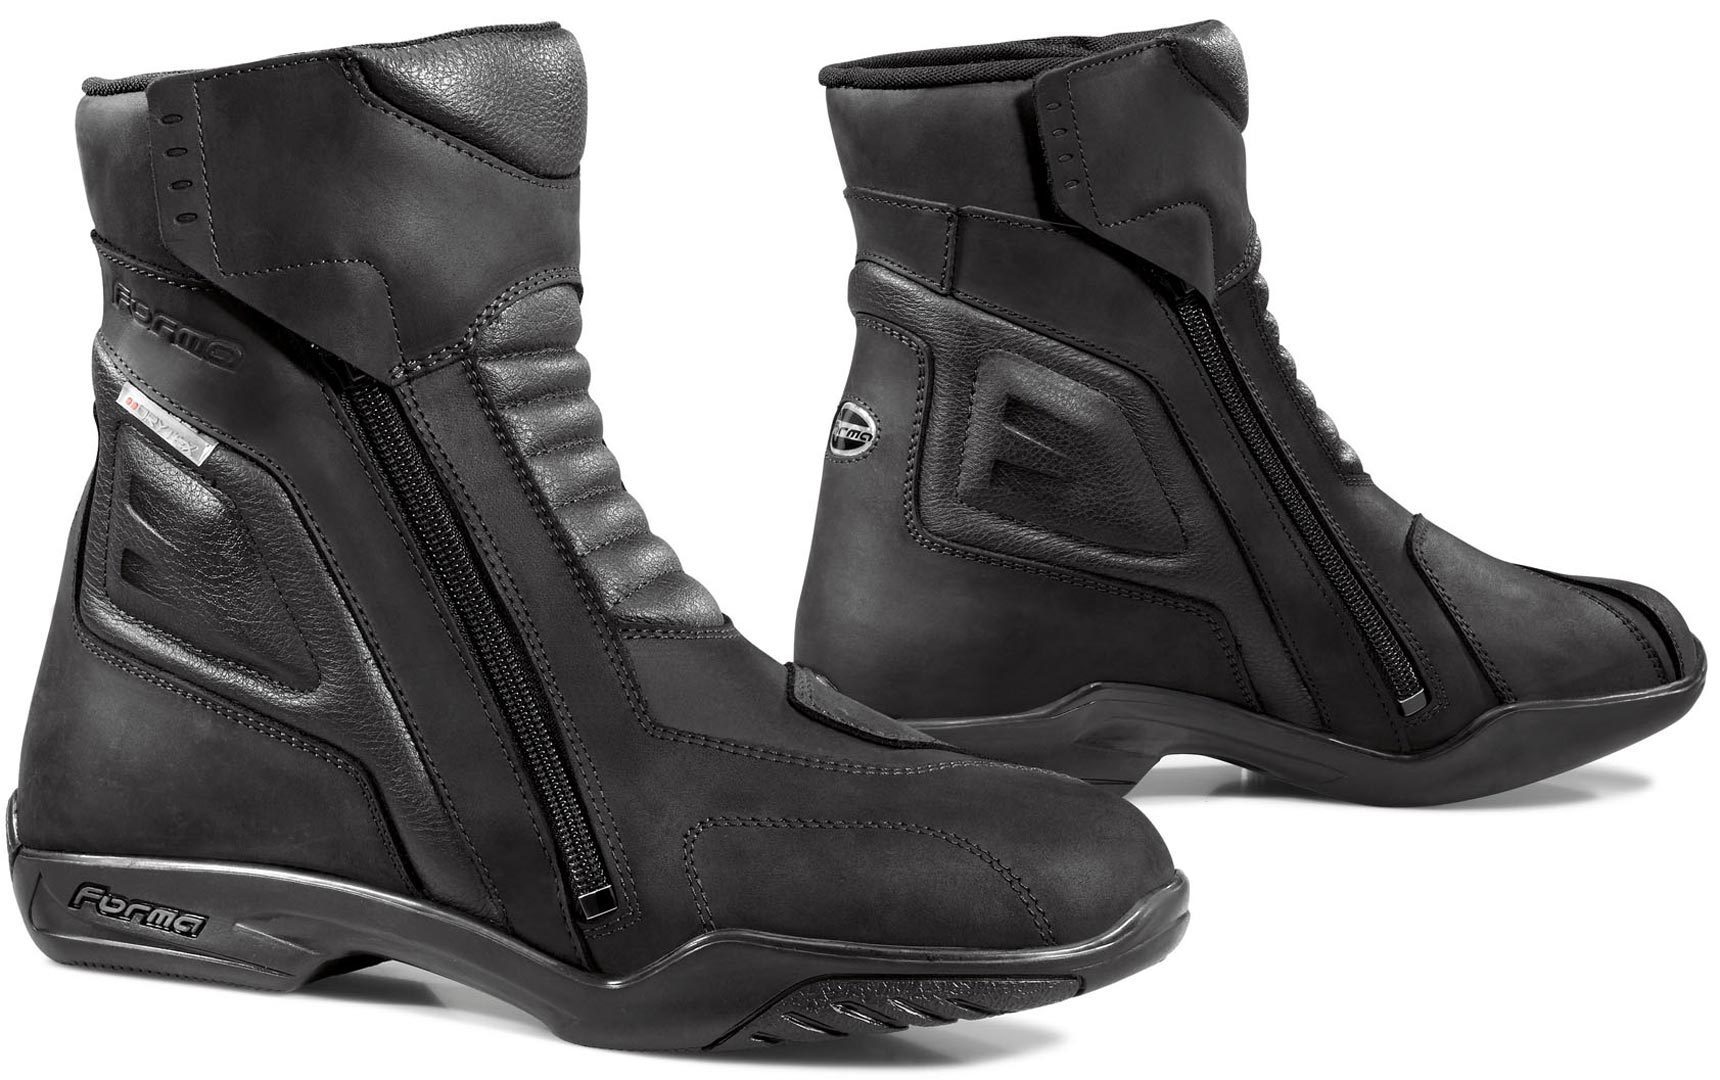 Ботинки Forma Latino Dry сухие водонепроницаемые мотоциклетные, черный